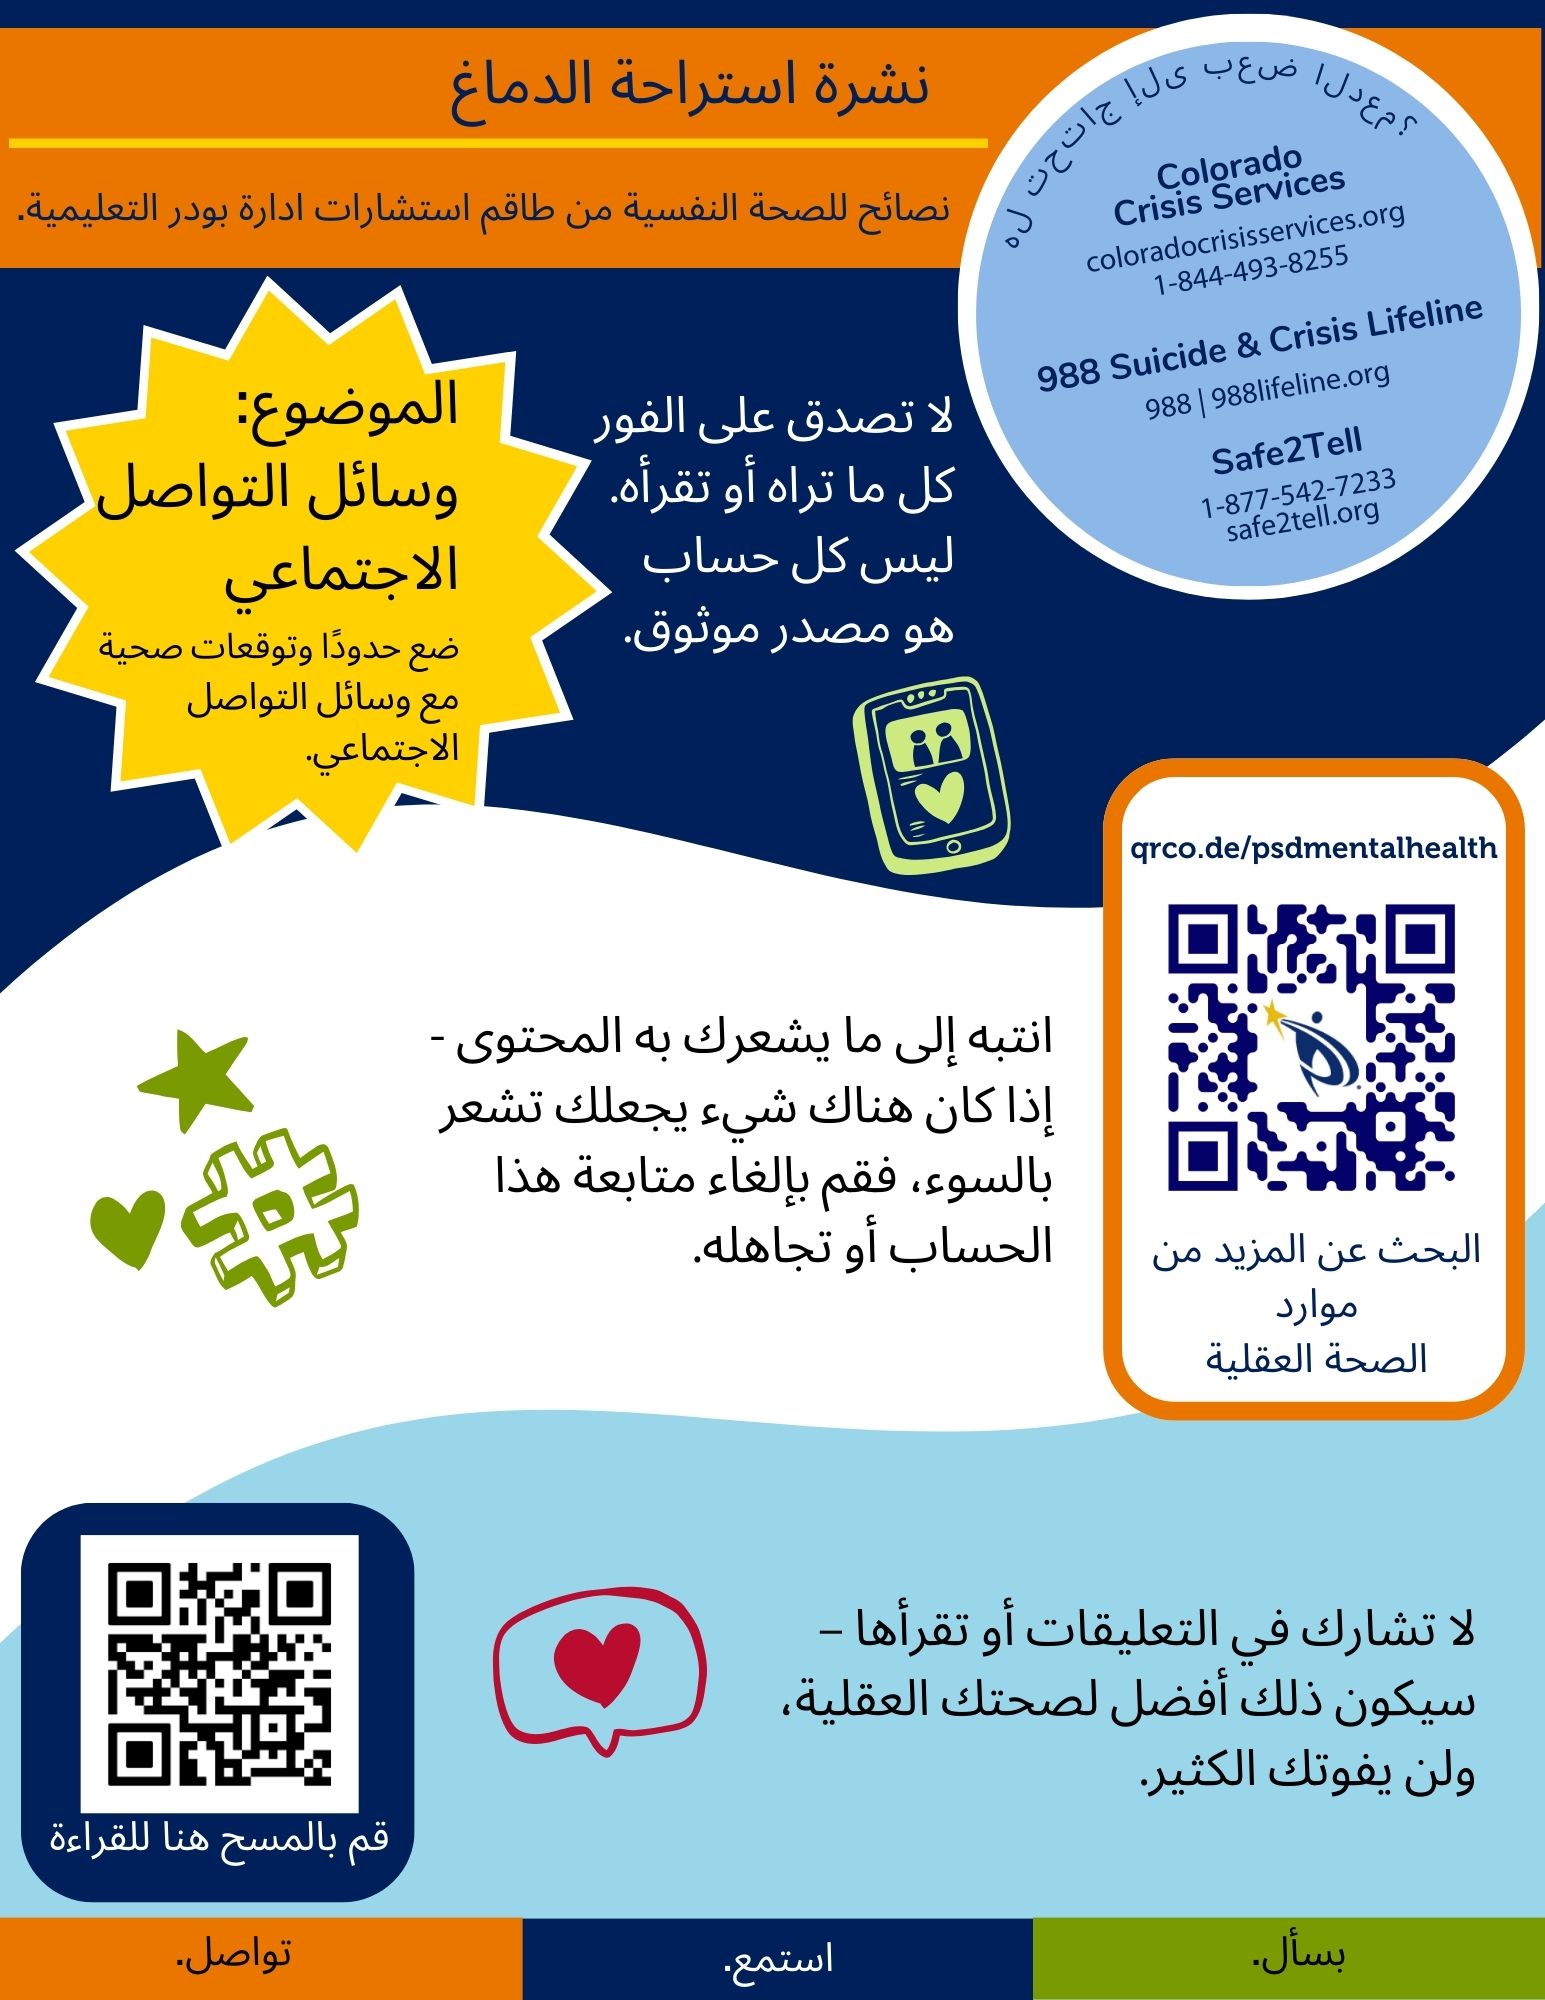 Arabic Brain Break - Social Media - Info is in the linked document. 